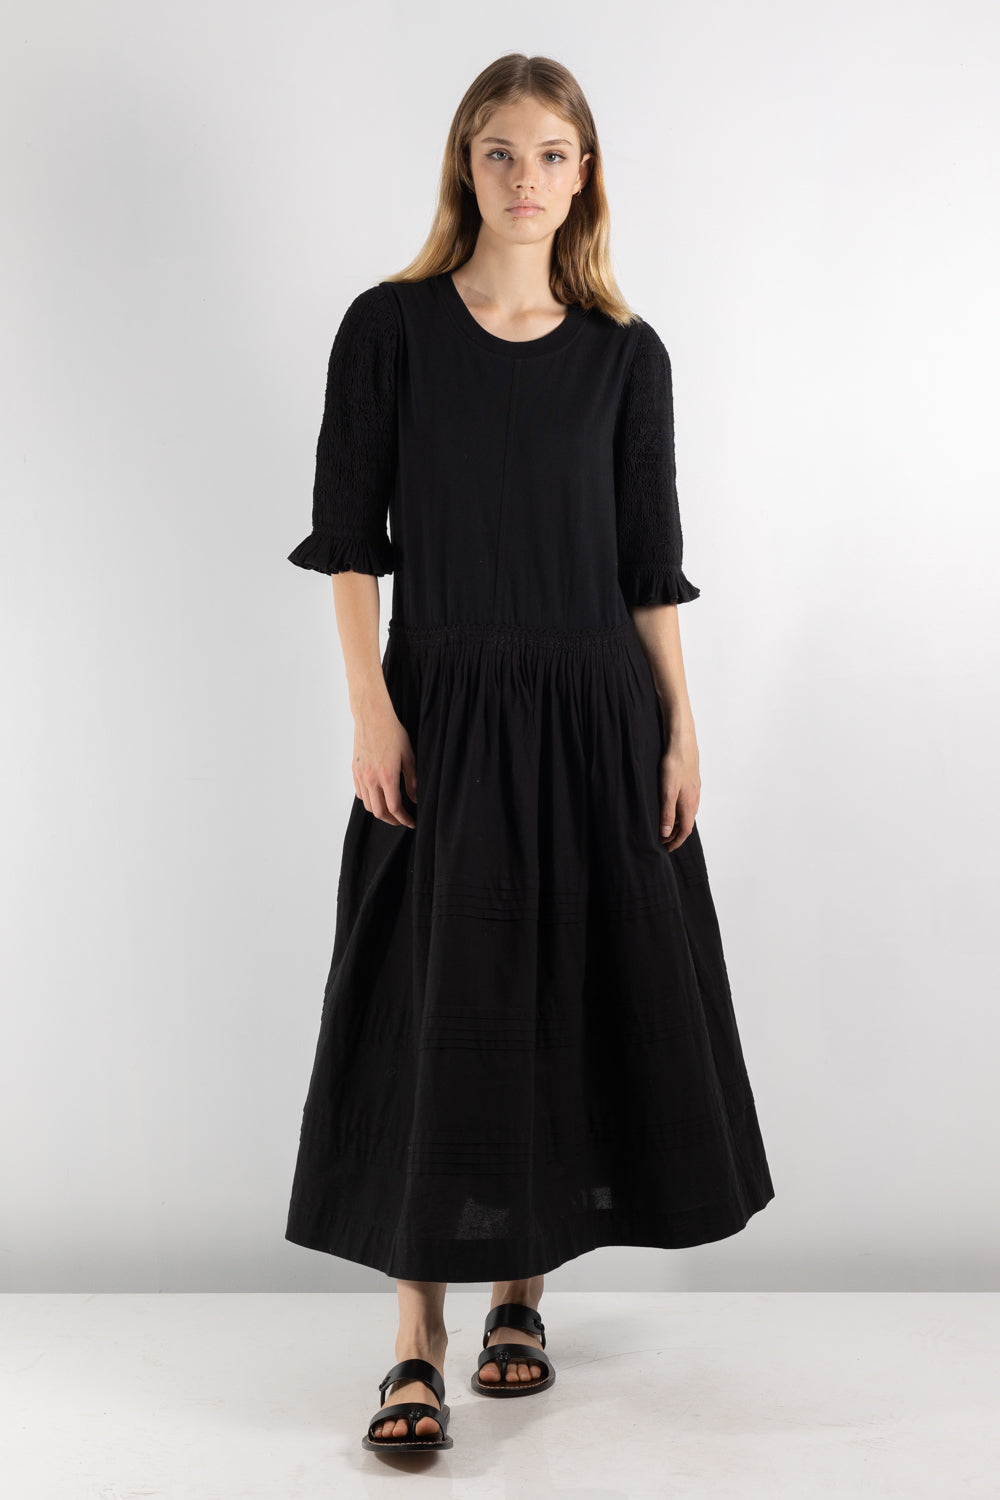 Womens Dress | Seas Willa Dress | The Standard Store